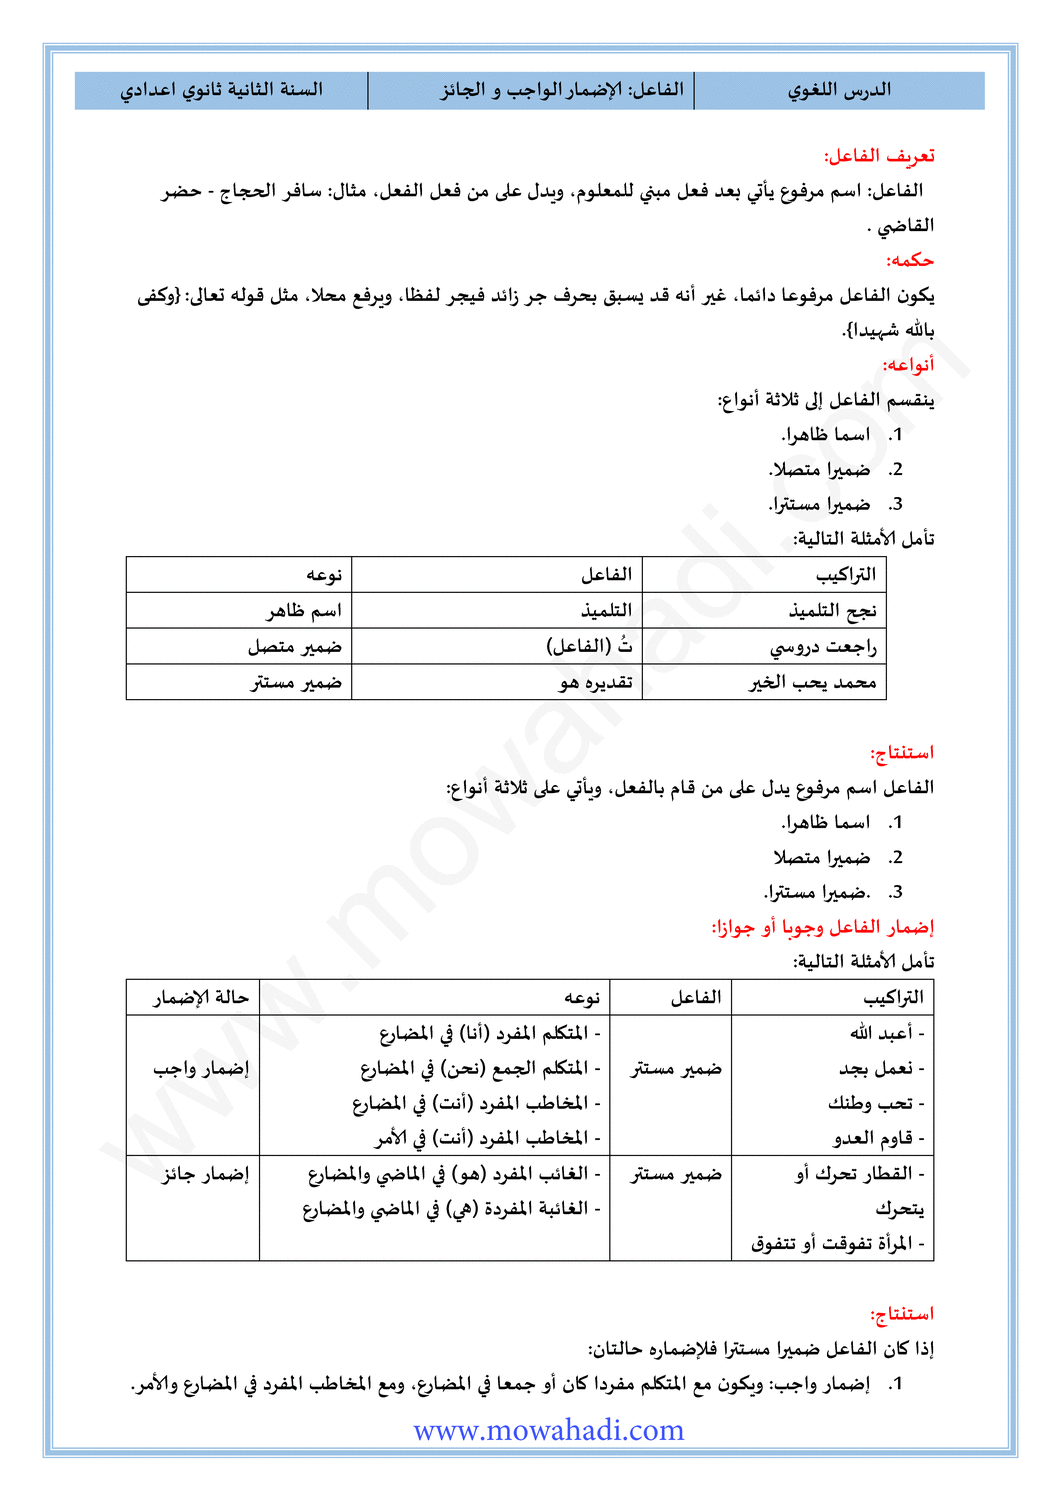 الدرس اللغوي الفاعل : الإضمار الواجب و الجائز للسنة الثانية اعدادي في مادة اللغة العربية